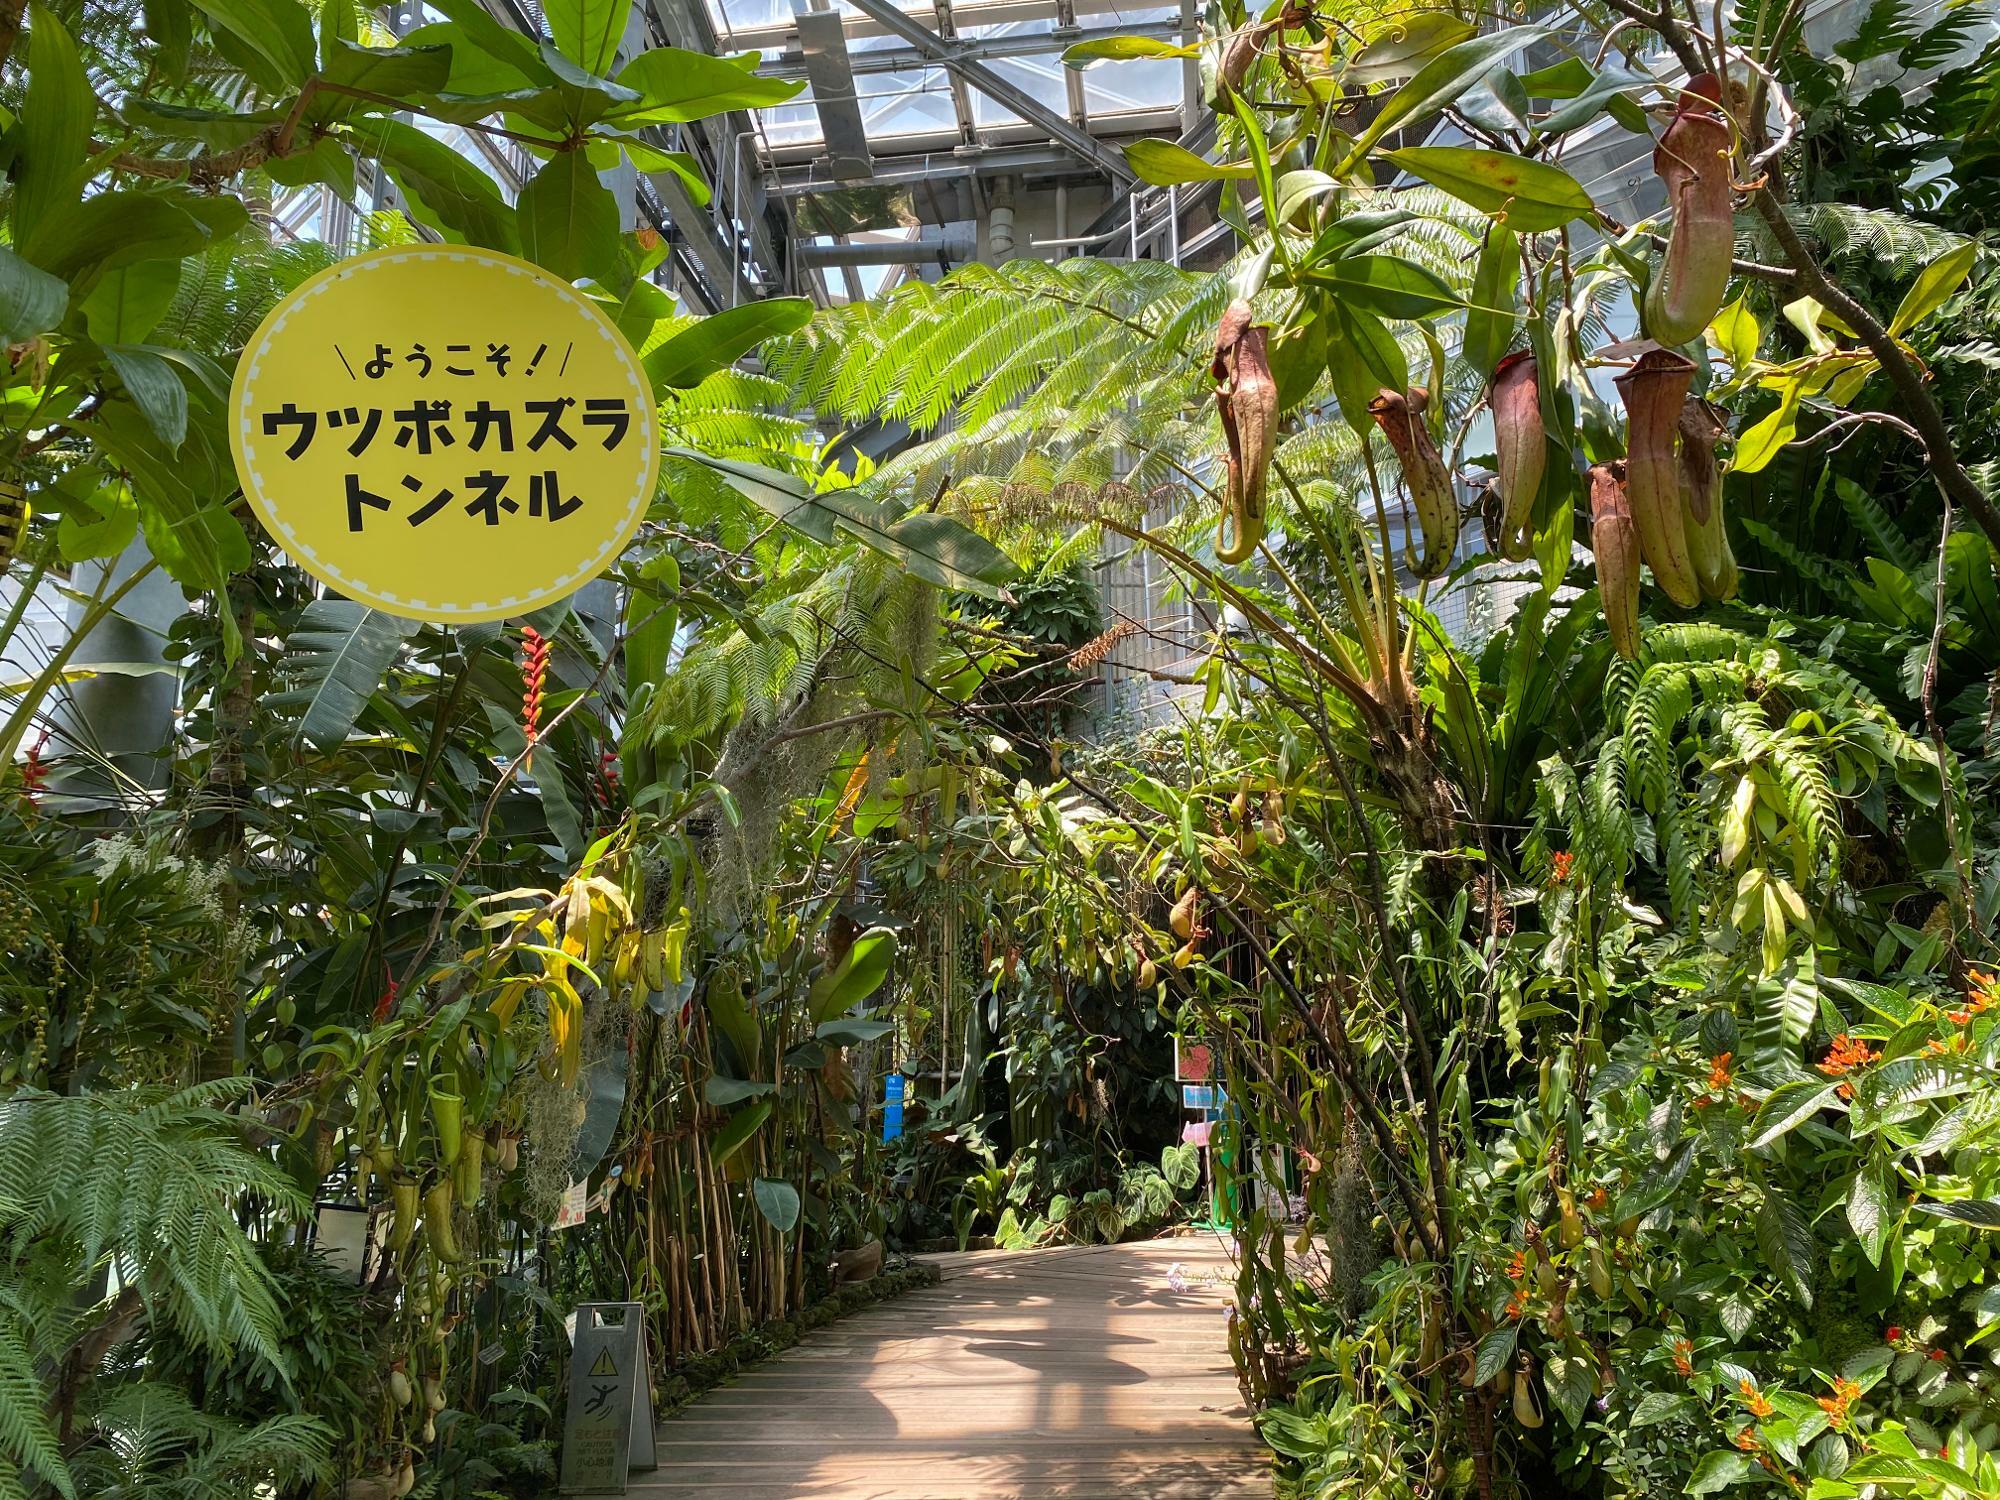 熱帯雨林植物室のウツボカズラトンネル